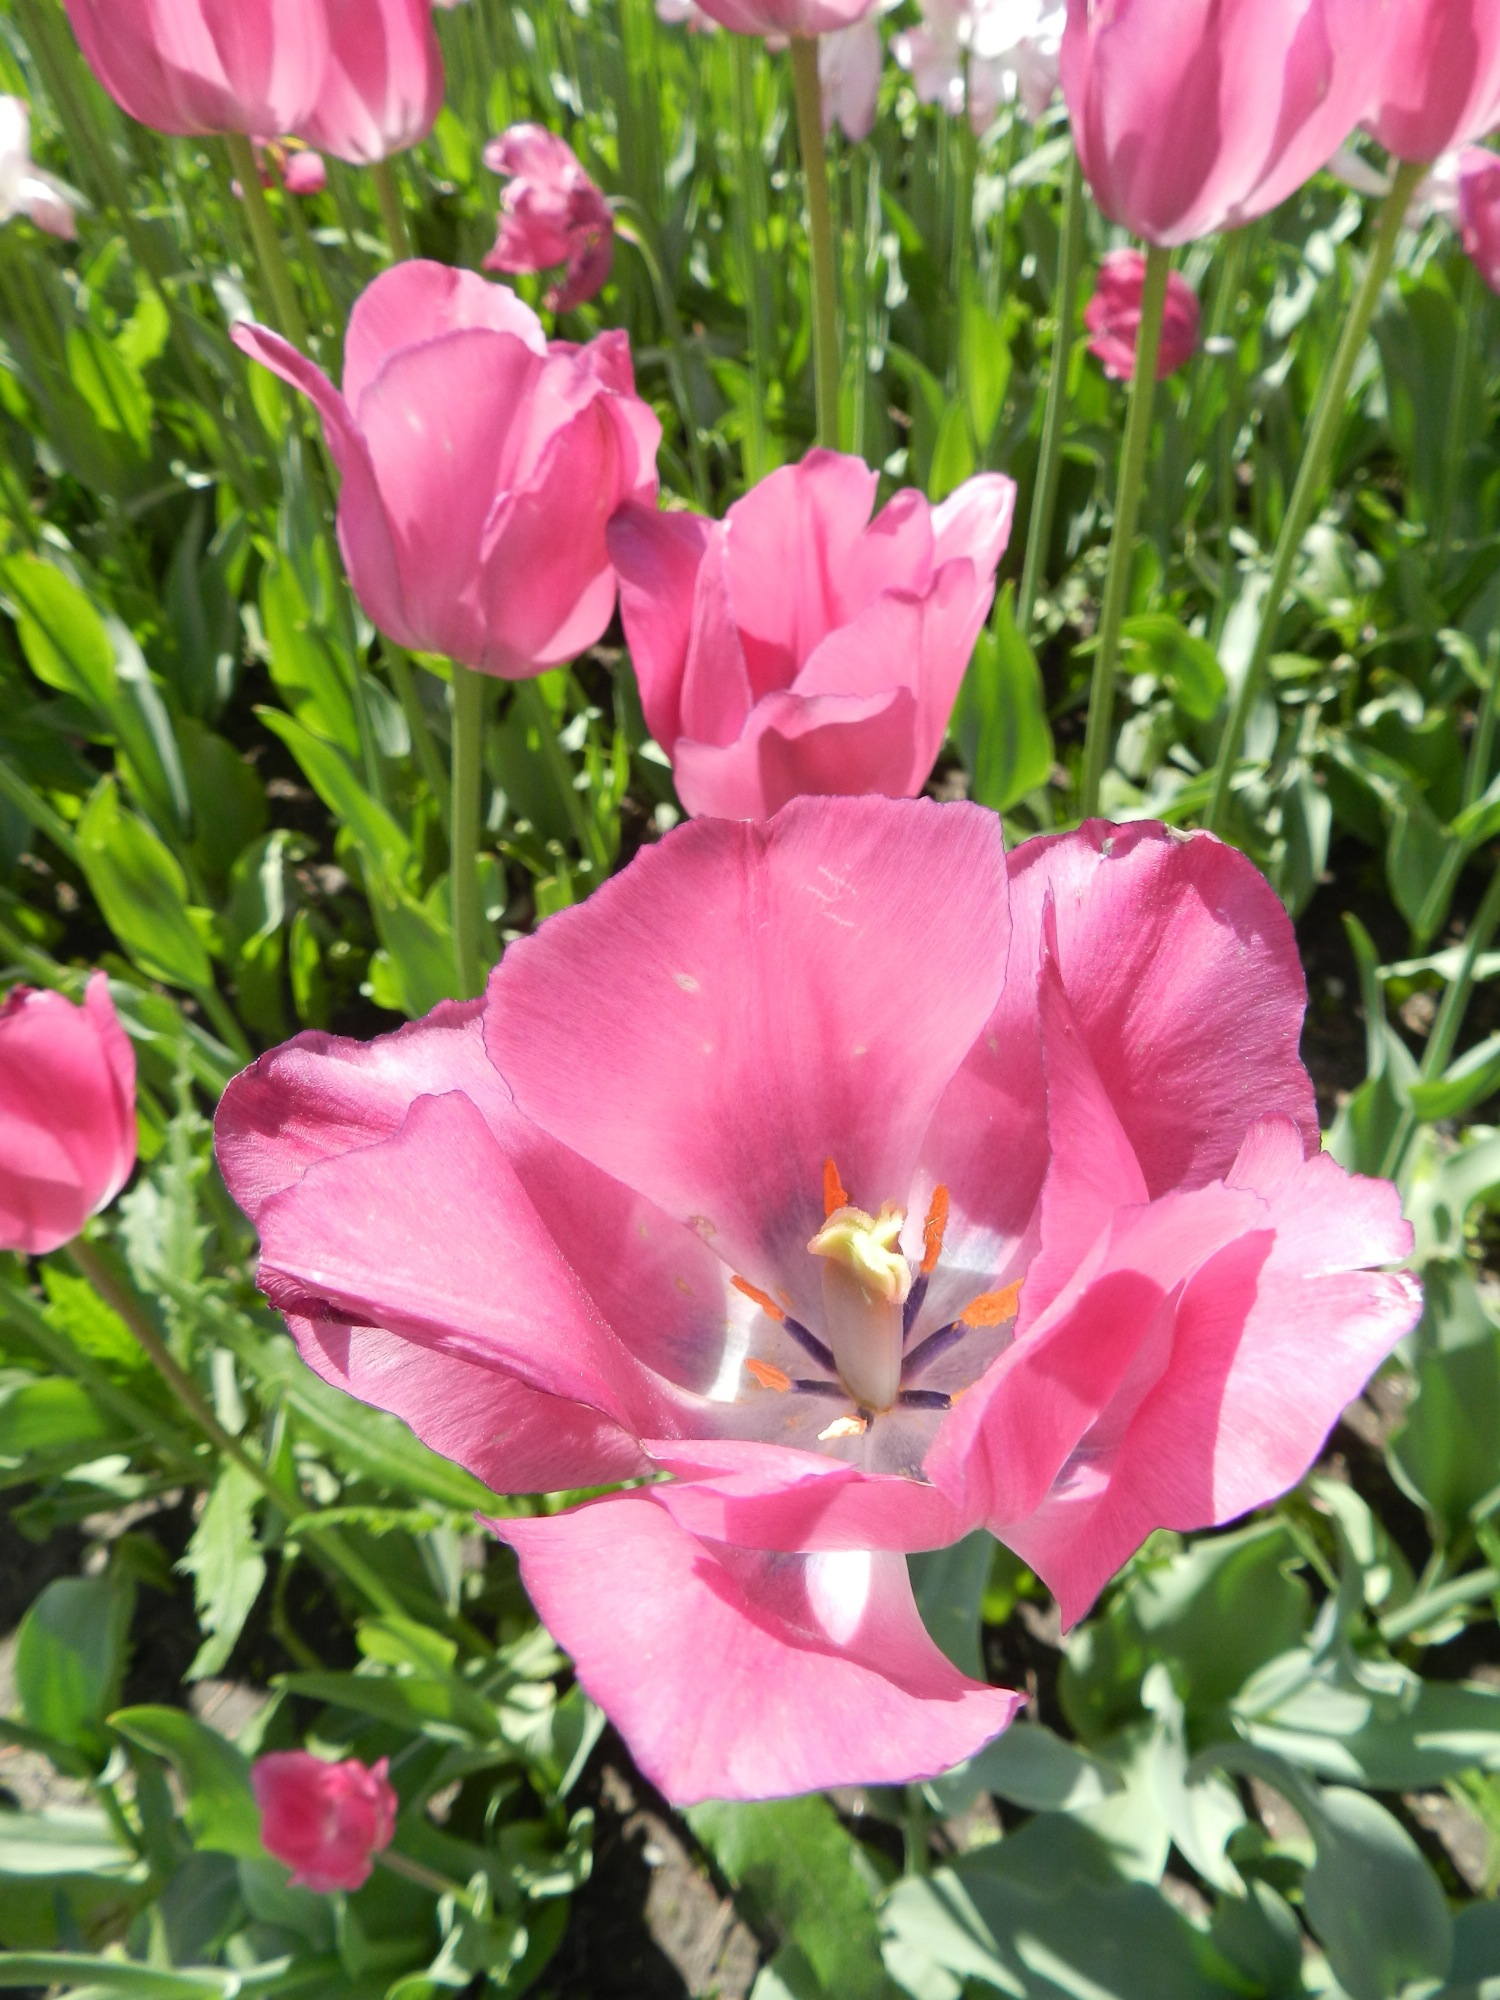 Detailaufnahme einer blühenden Tulpe